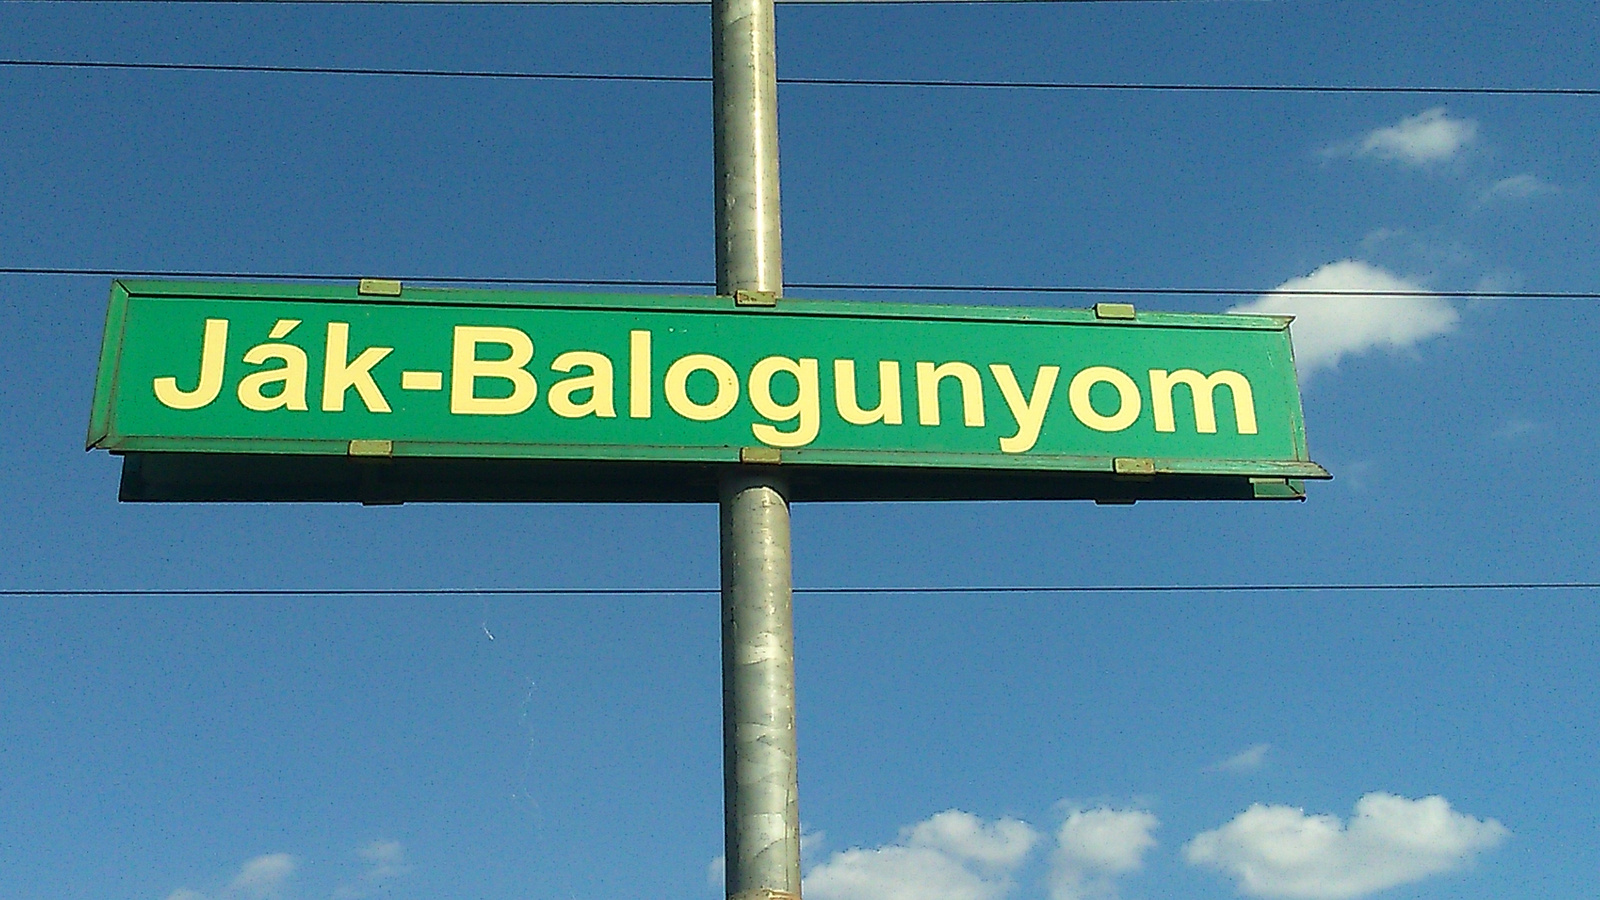 Ják-Balagunyom állomás névtáblája a villany póznán